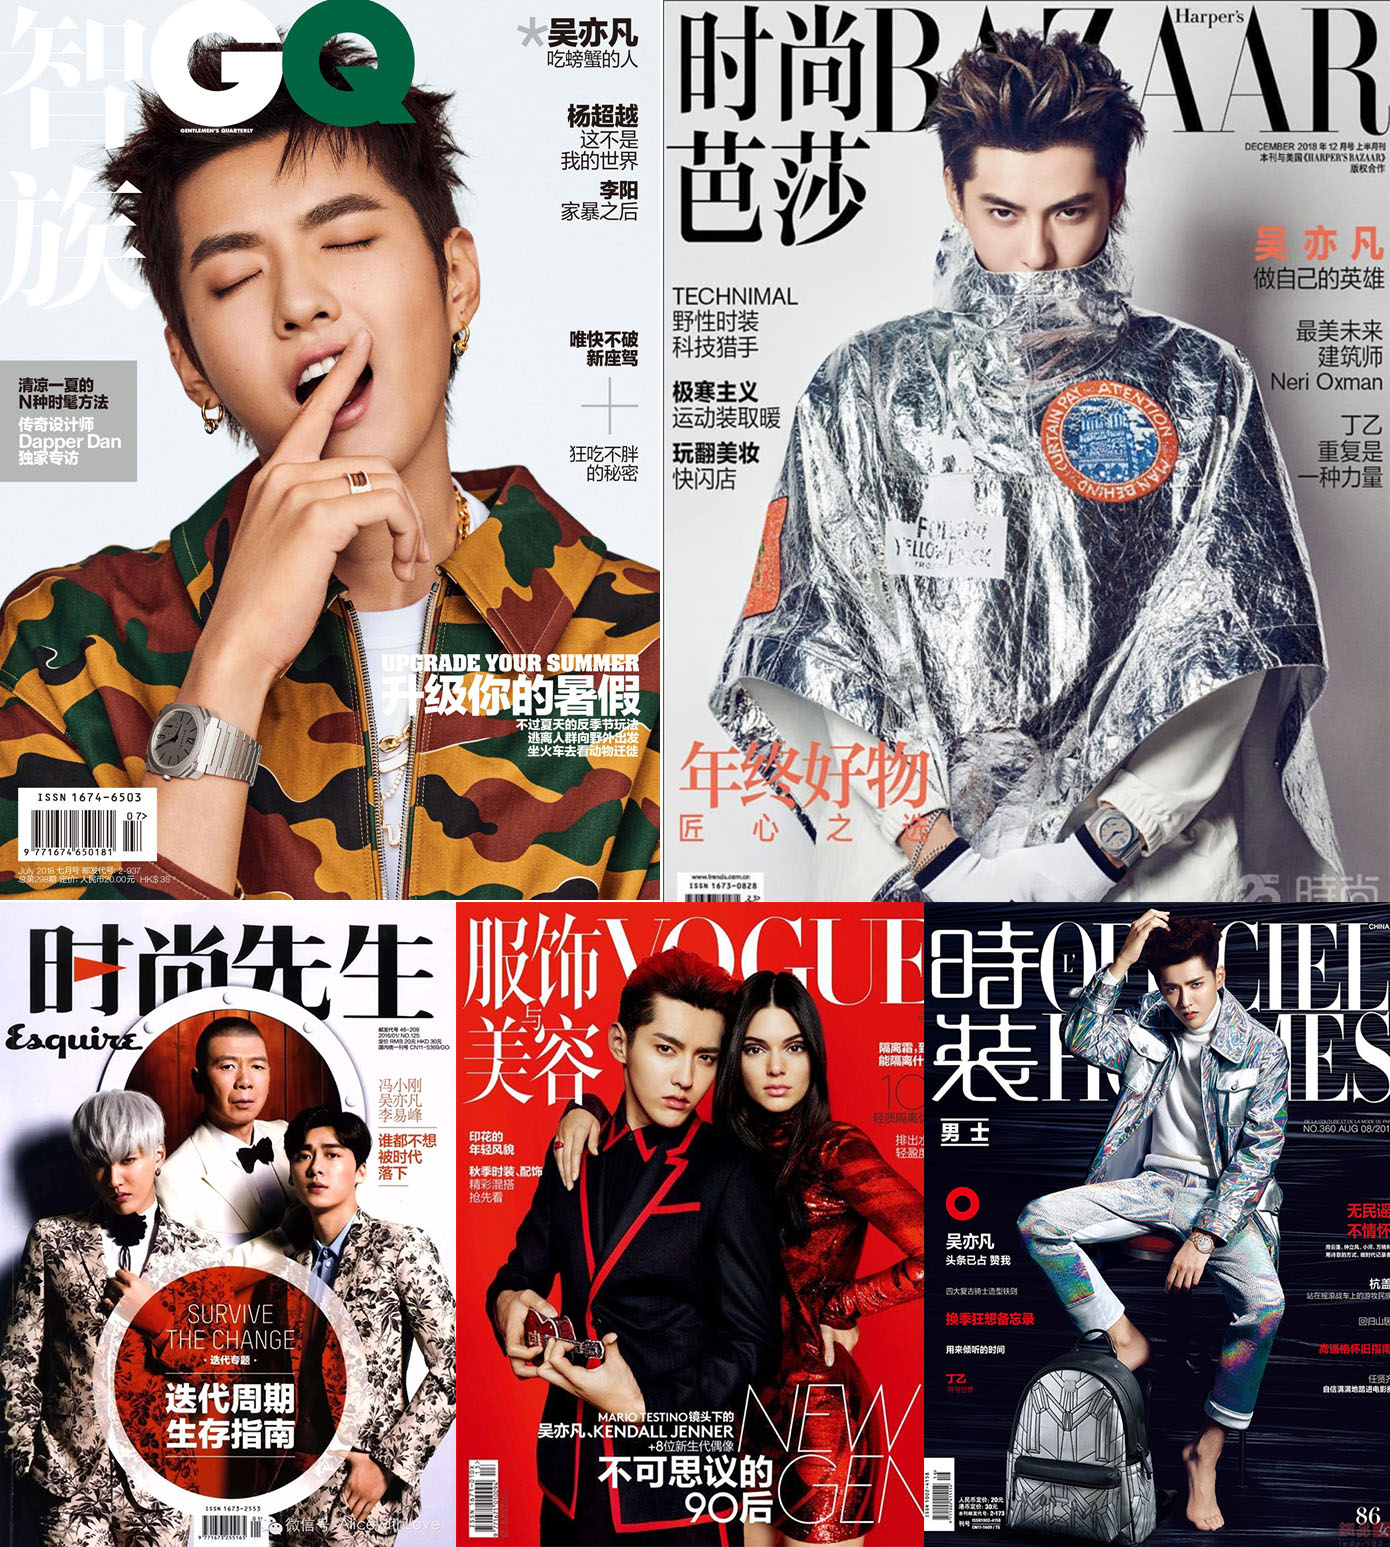 Ngô Diệc Phàm là nam thần tượng hiếm hoi xuất hiện đầy đủ trên 5 bìa tạp chí: GQ, Esquire, L'Officiel Hommes, Harper's Bazzar Men và Elle Men - được mệnh danh là ngũ đại tạp chí nam của Trung Quốc.